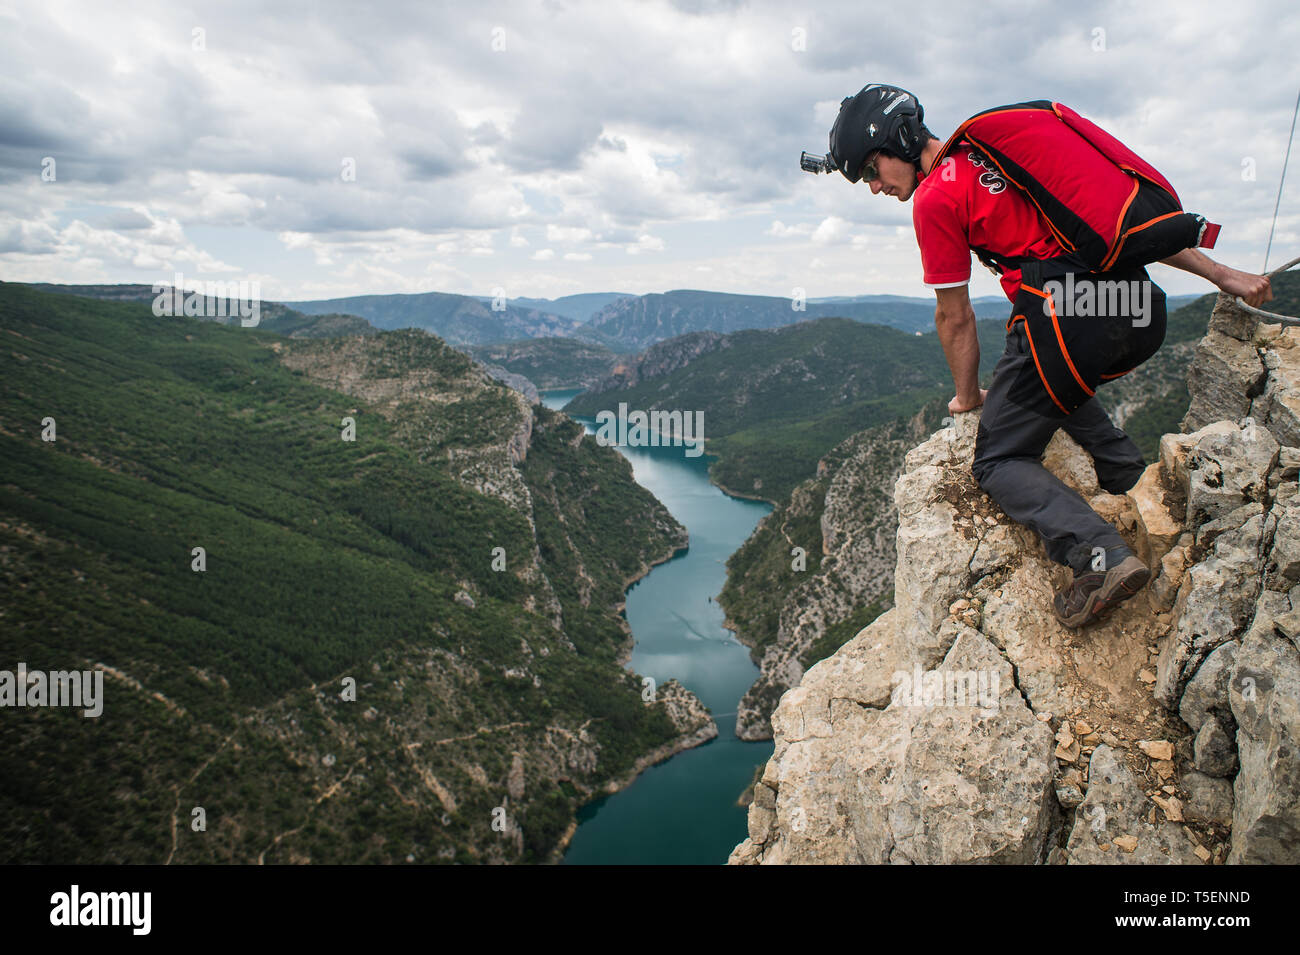 PUENTE DE MONTAÑANA, SPANIEN - 23. Mai: ein Mann mit einem Fallschirm, der Sprung von einer Klippe in Spanien, Huesca, Puente de Montañana, Spanien am 23. Mai 2014 in Puente de Montañana, Frankreich. Stockfoto